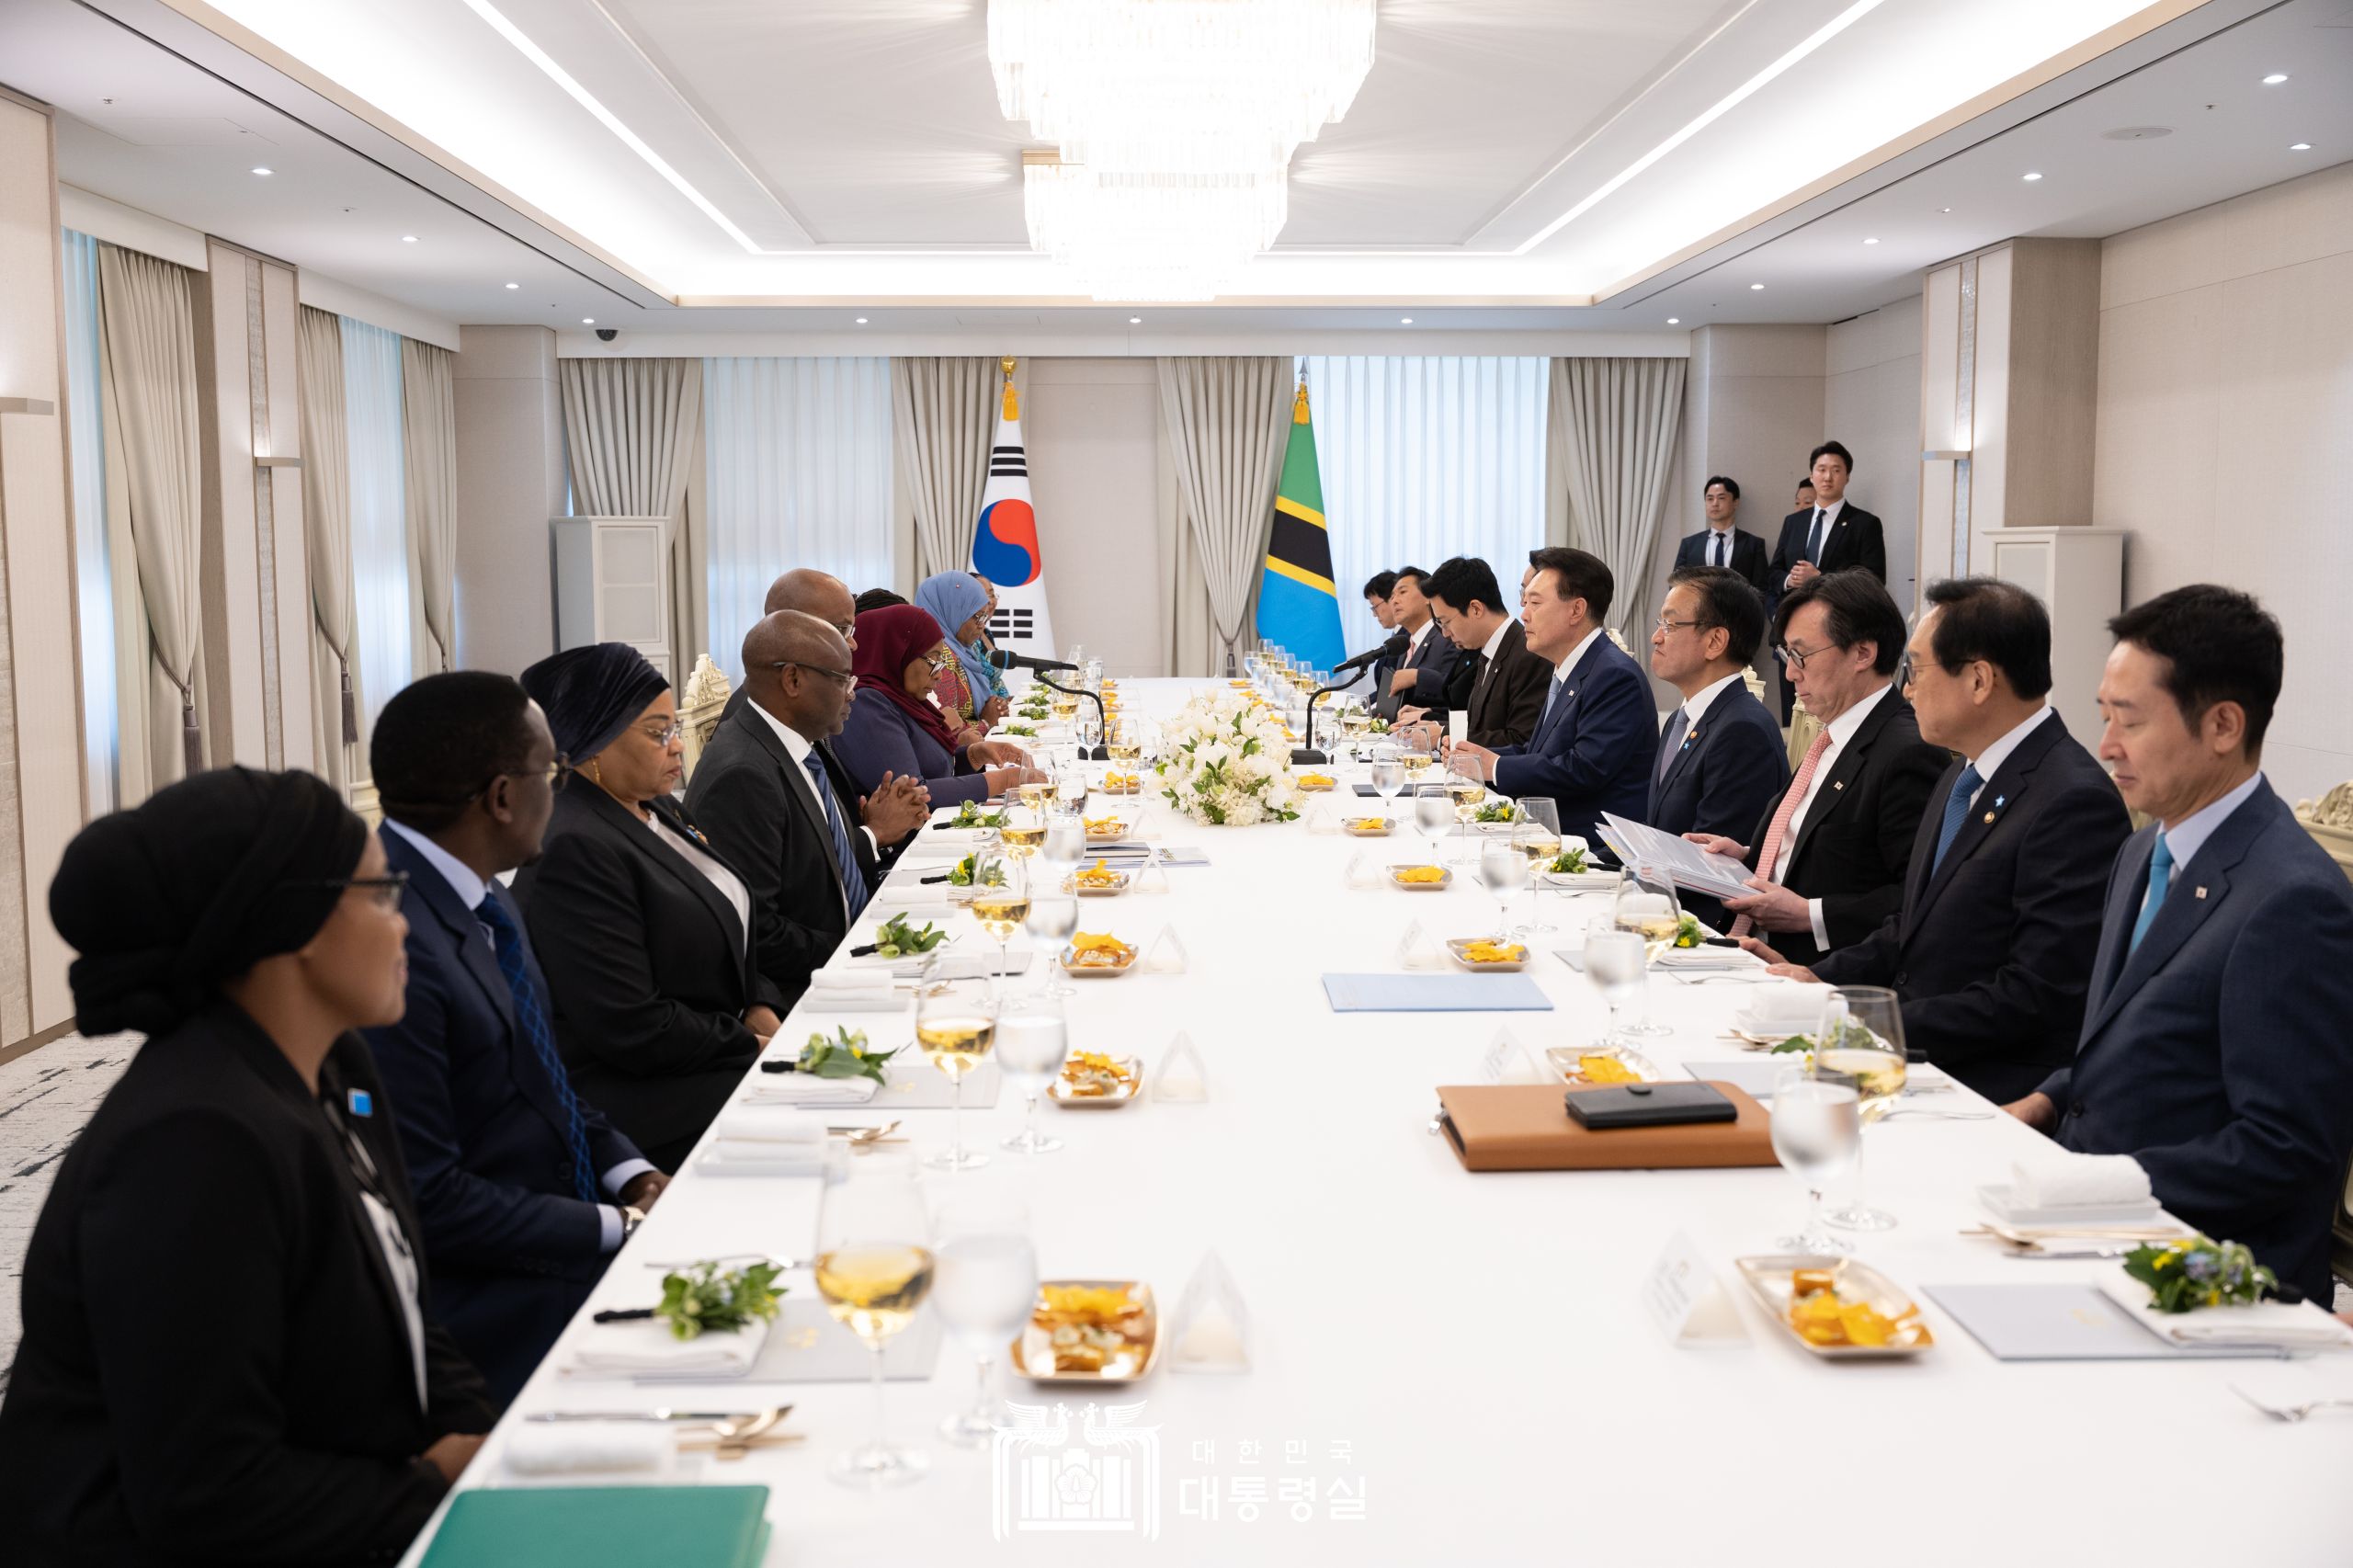 윤석열 대통령, 한-아프리카 정상회의 계기 탄자니아 대통령과 오찬 회담 개최(6.2)